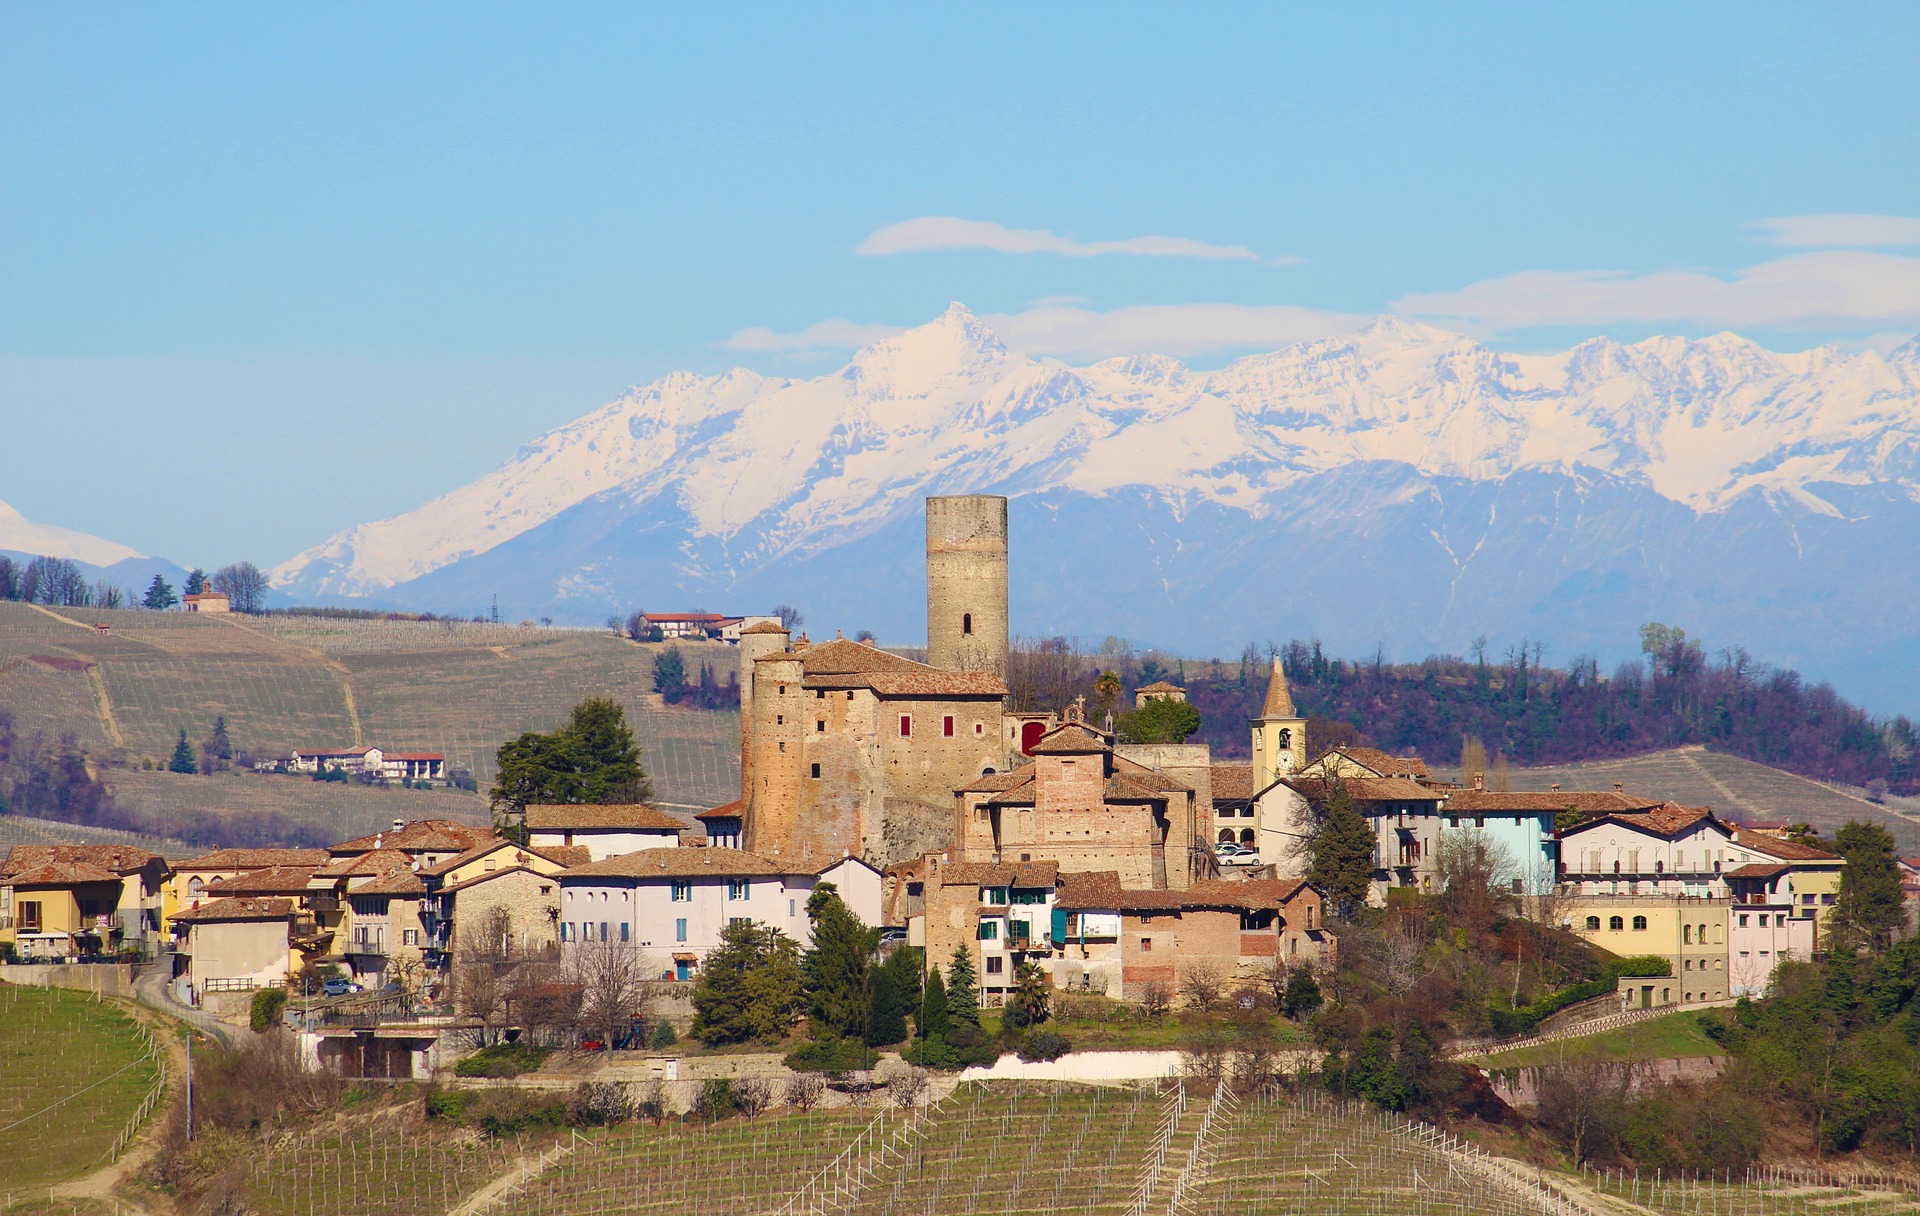 Langhe Roero Monferrato Viaggio Nel Piemonte Unesco